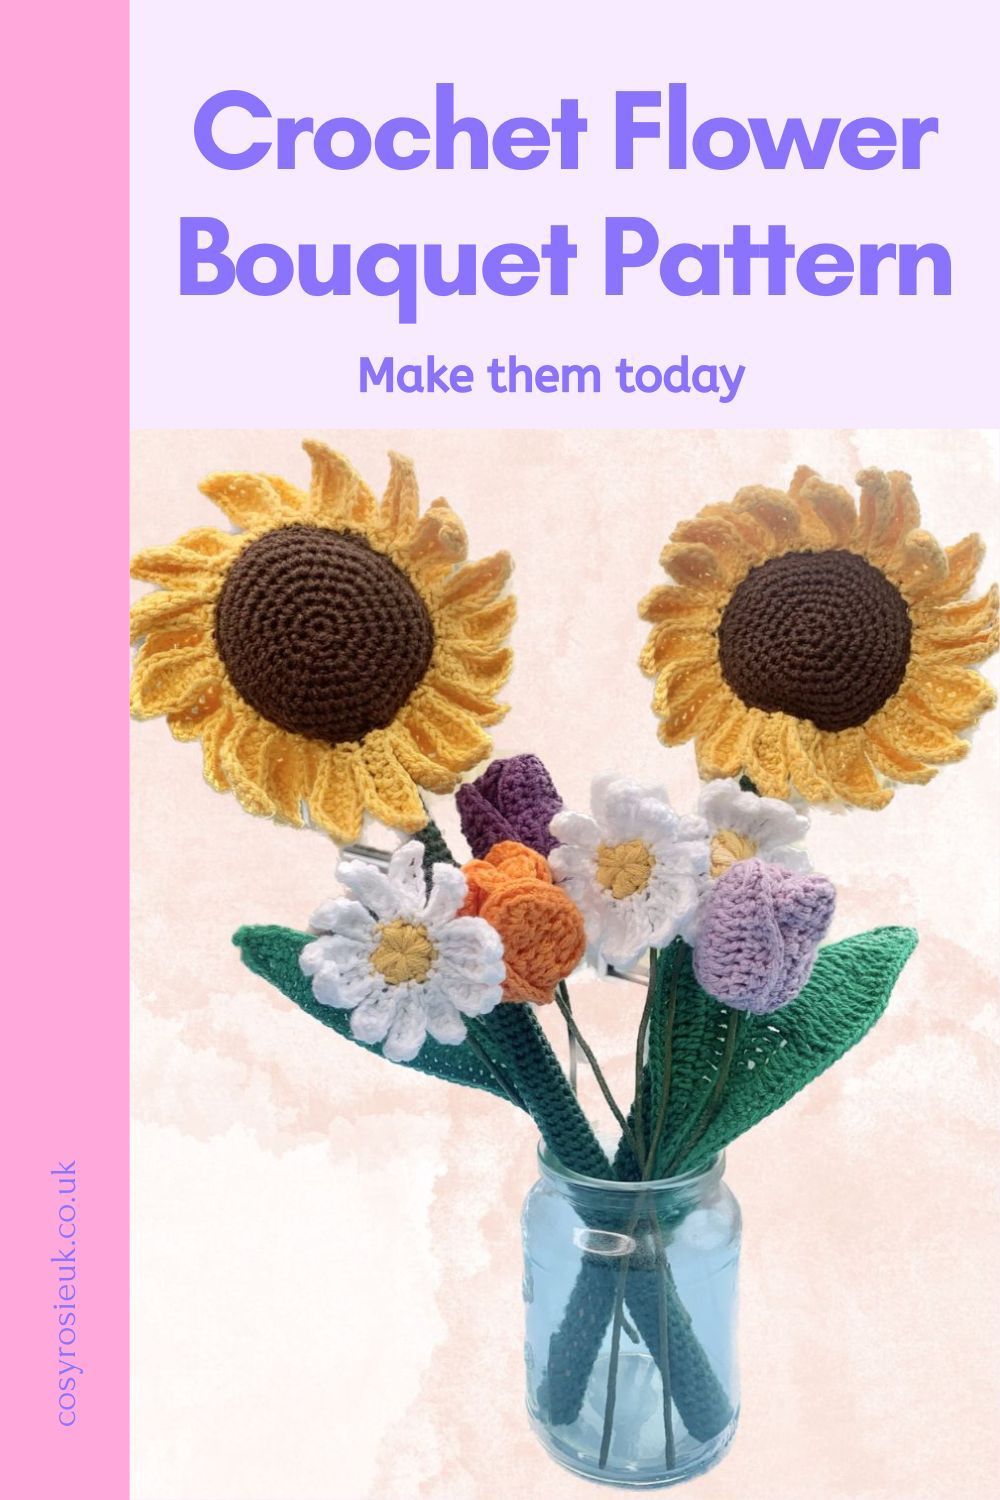 Crochet Flower Bouquet Pattern Free